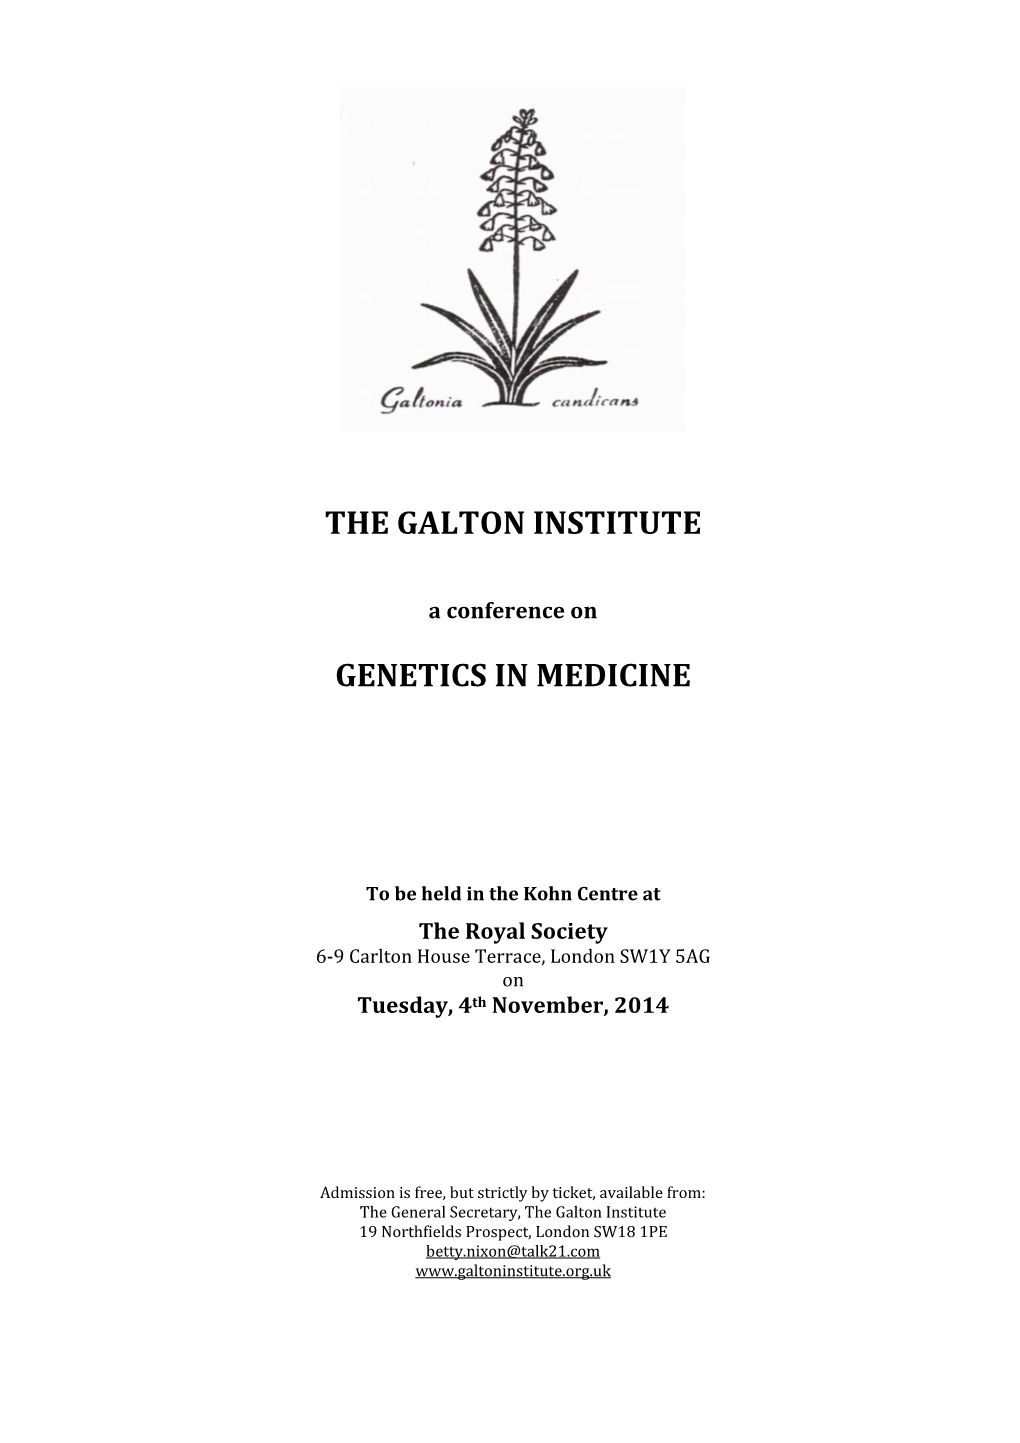 The Galton Institute Genetics in Medicine